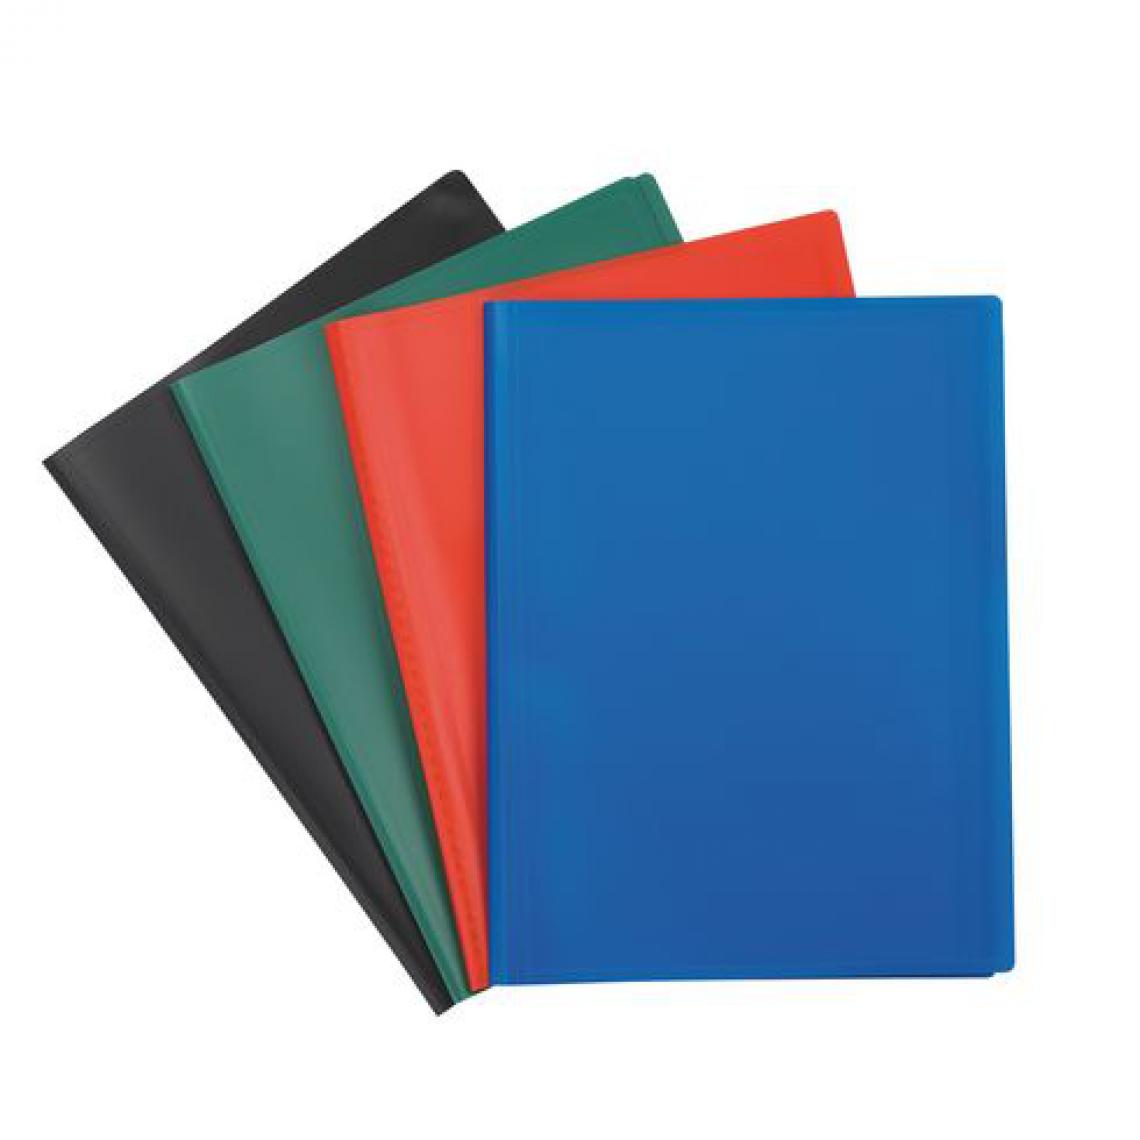 Oxford - Protège-documents A4 couleurs assorties - 10 pochettes - Lot de 10 - Accessoires Bureau